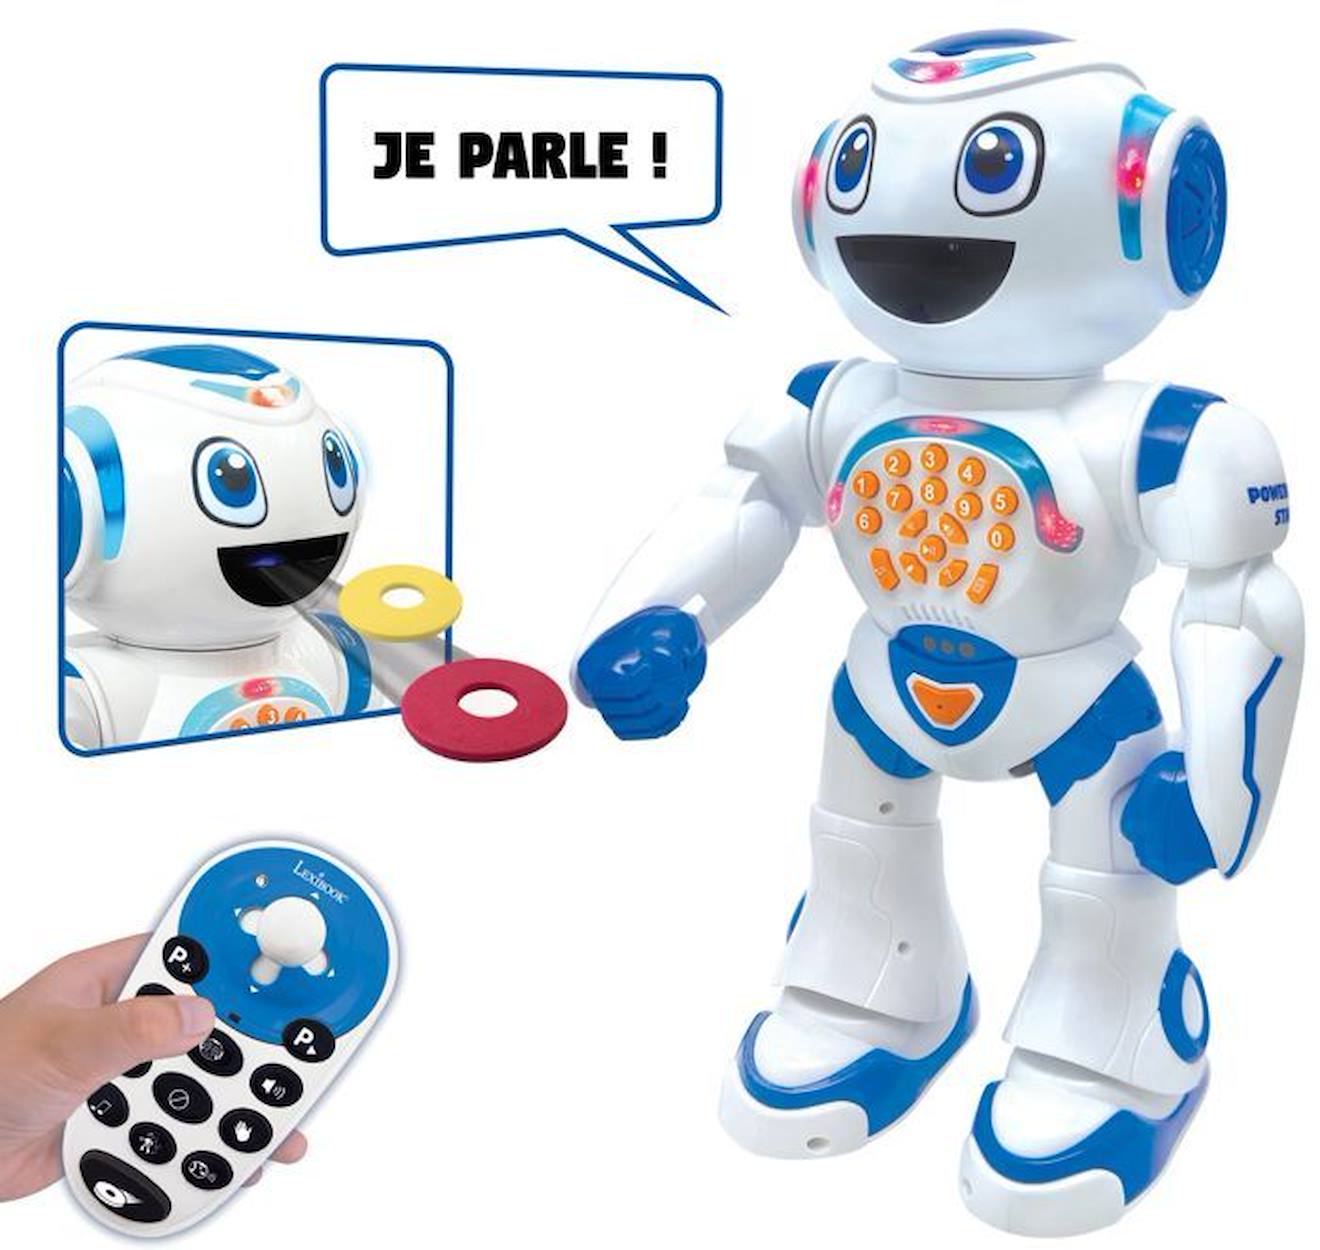 Powerman® Star Robot Interactif Pour Jouer Et Apprendre Avec Contrôle Gestuel Et Télécommande (franç